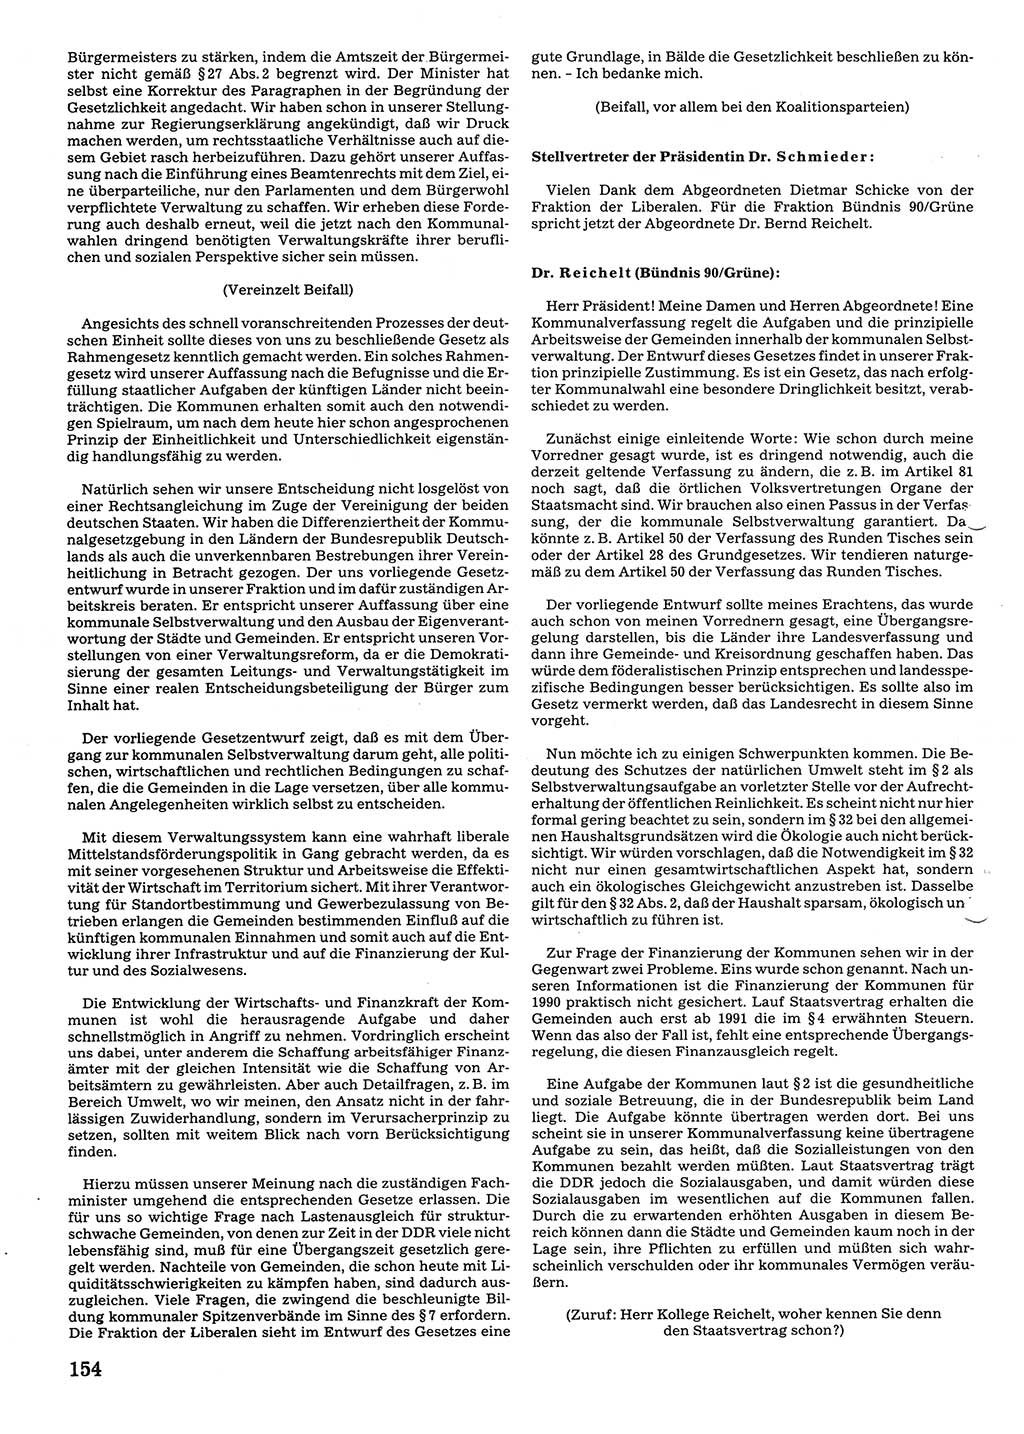 Tagungen der Volkskammer (VK) der Deutschen Demokratischen Republik (DDR), 10. Wahlperiode 1990, Seite 154 (VK. DDR 10. WP. 1990, Prot. Tg. 1-38, 5.4.-2.10.1990, S. 154)